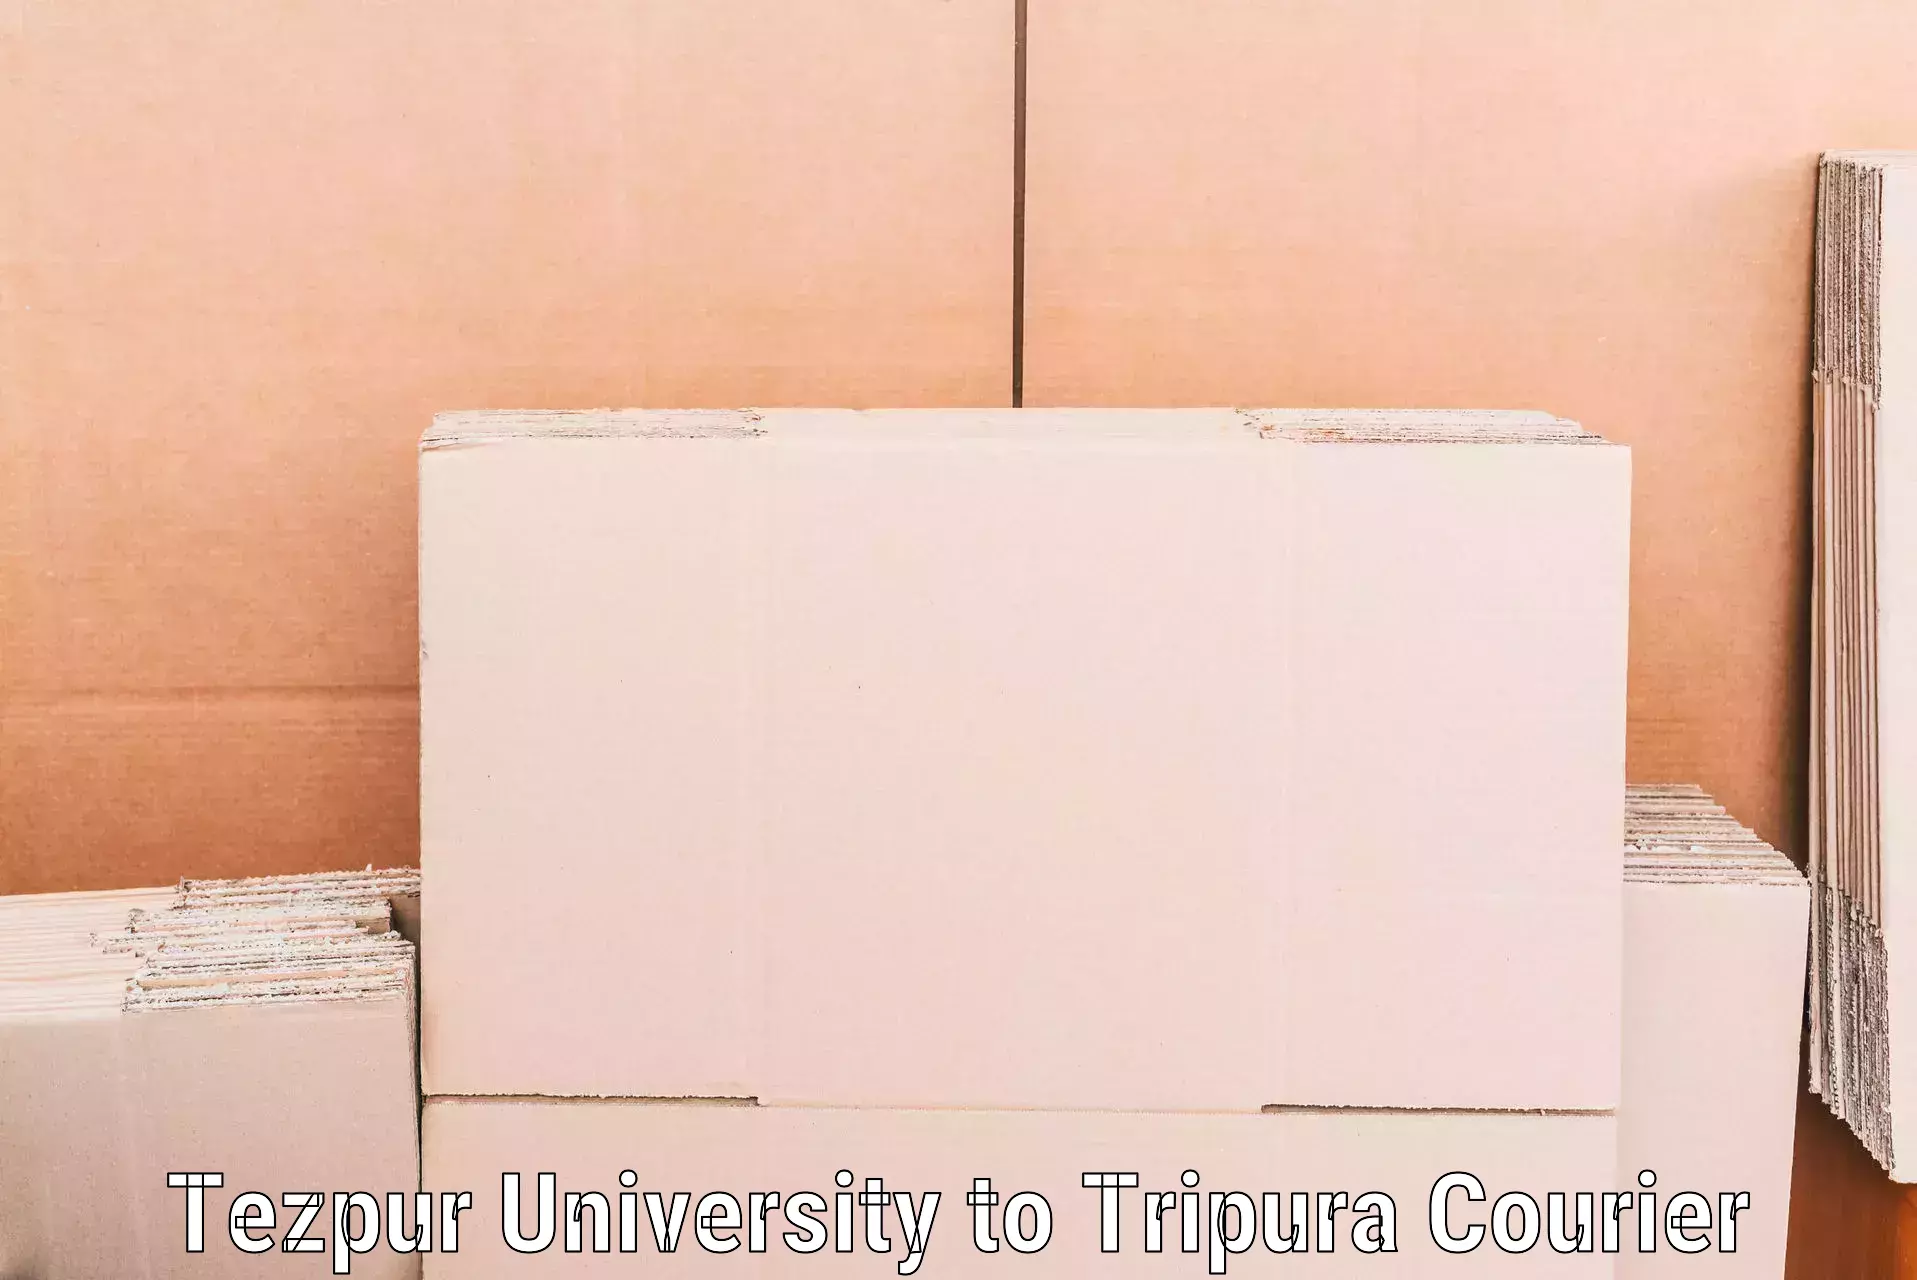 Quality moving company Tezpur University to Udaipur Tripura